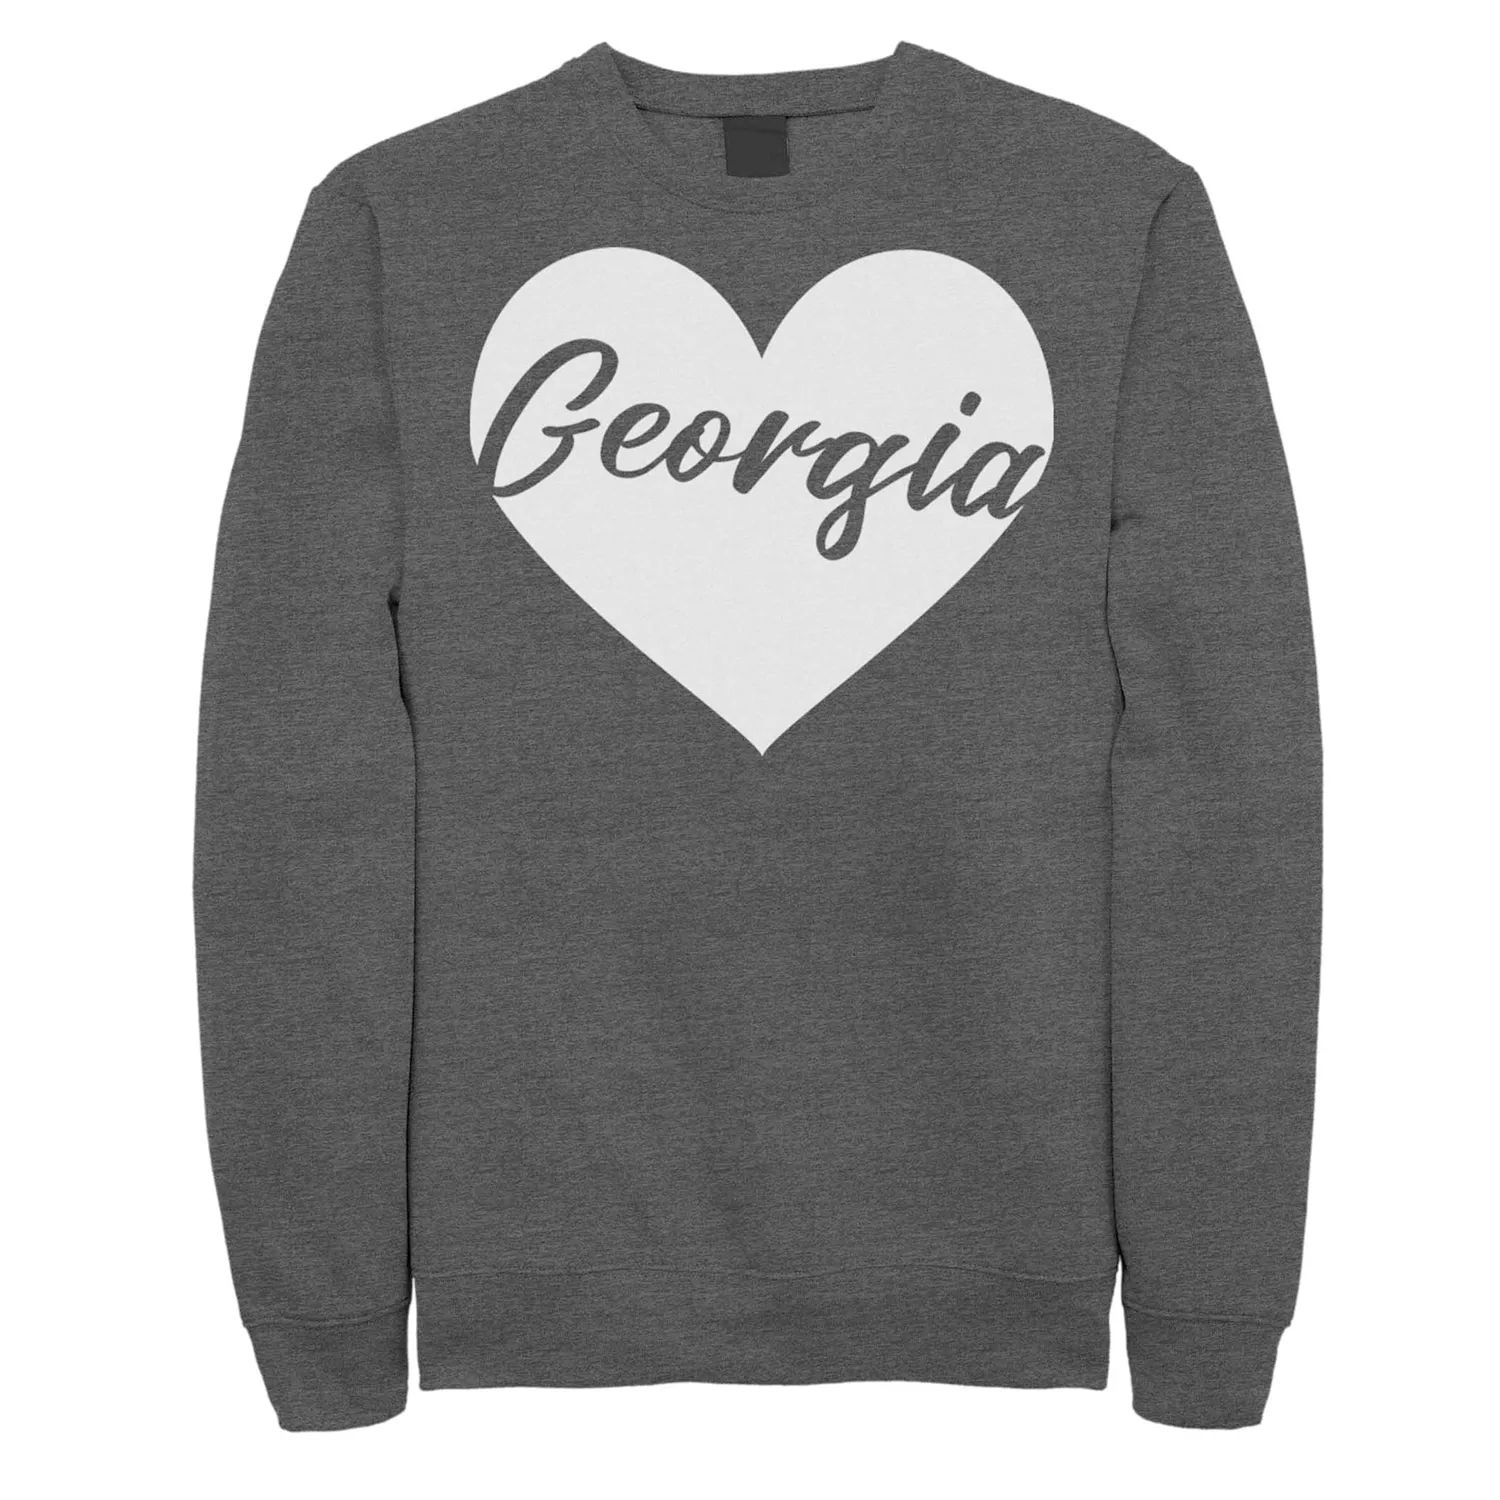 цена Флисовый свитер Georgia Heart для юниоров